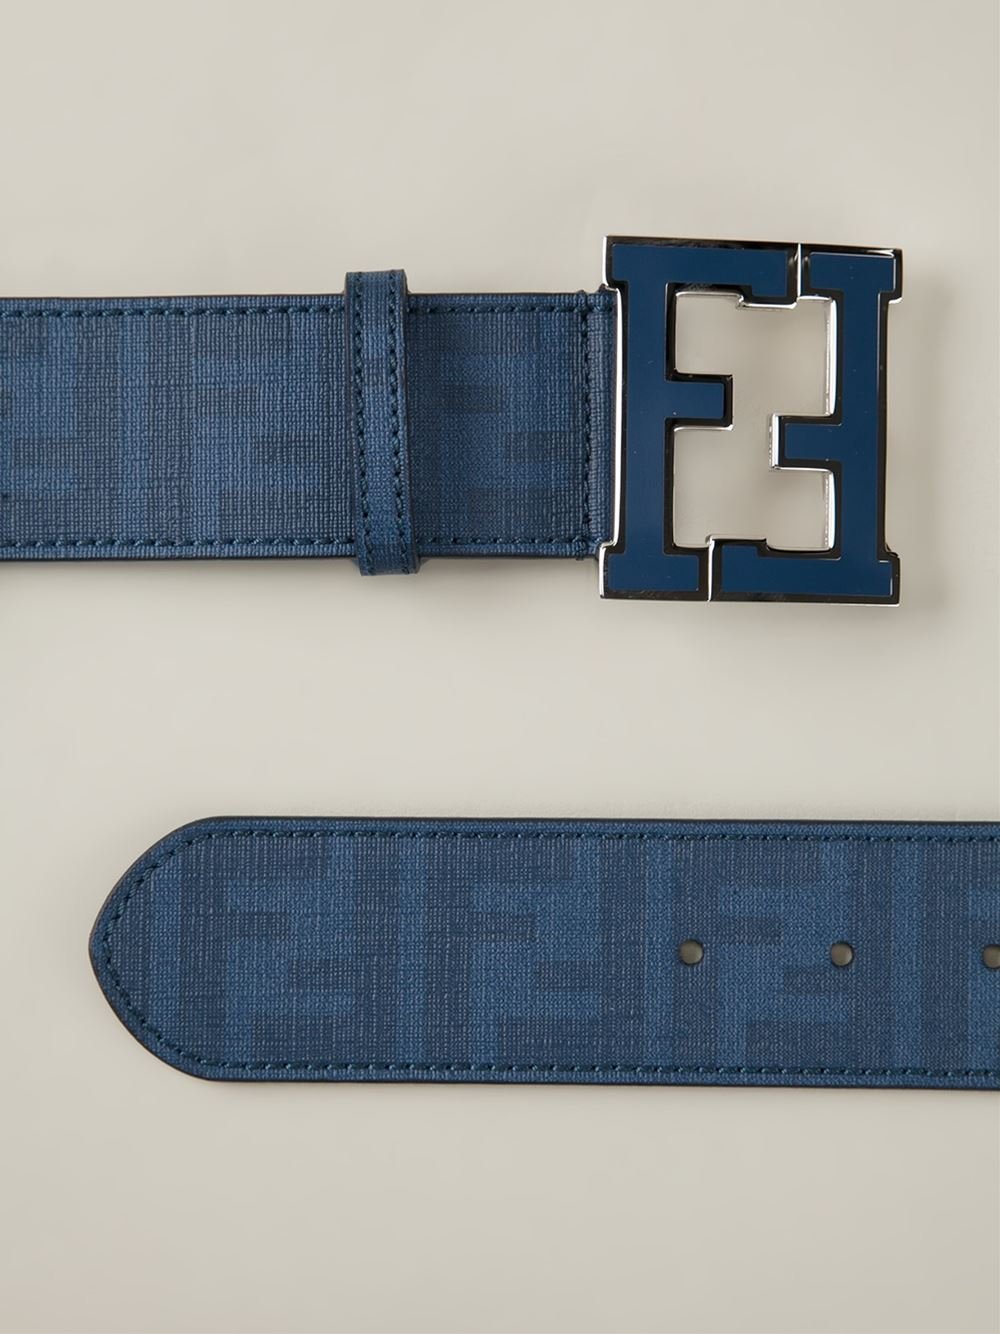 Fendi Ff Logo Buckle Belt in Blue for Men | Lyst